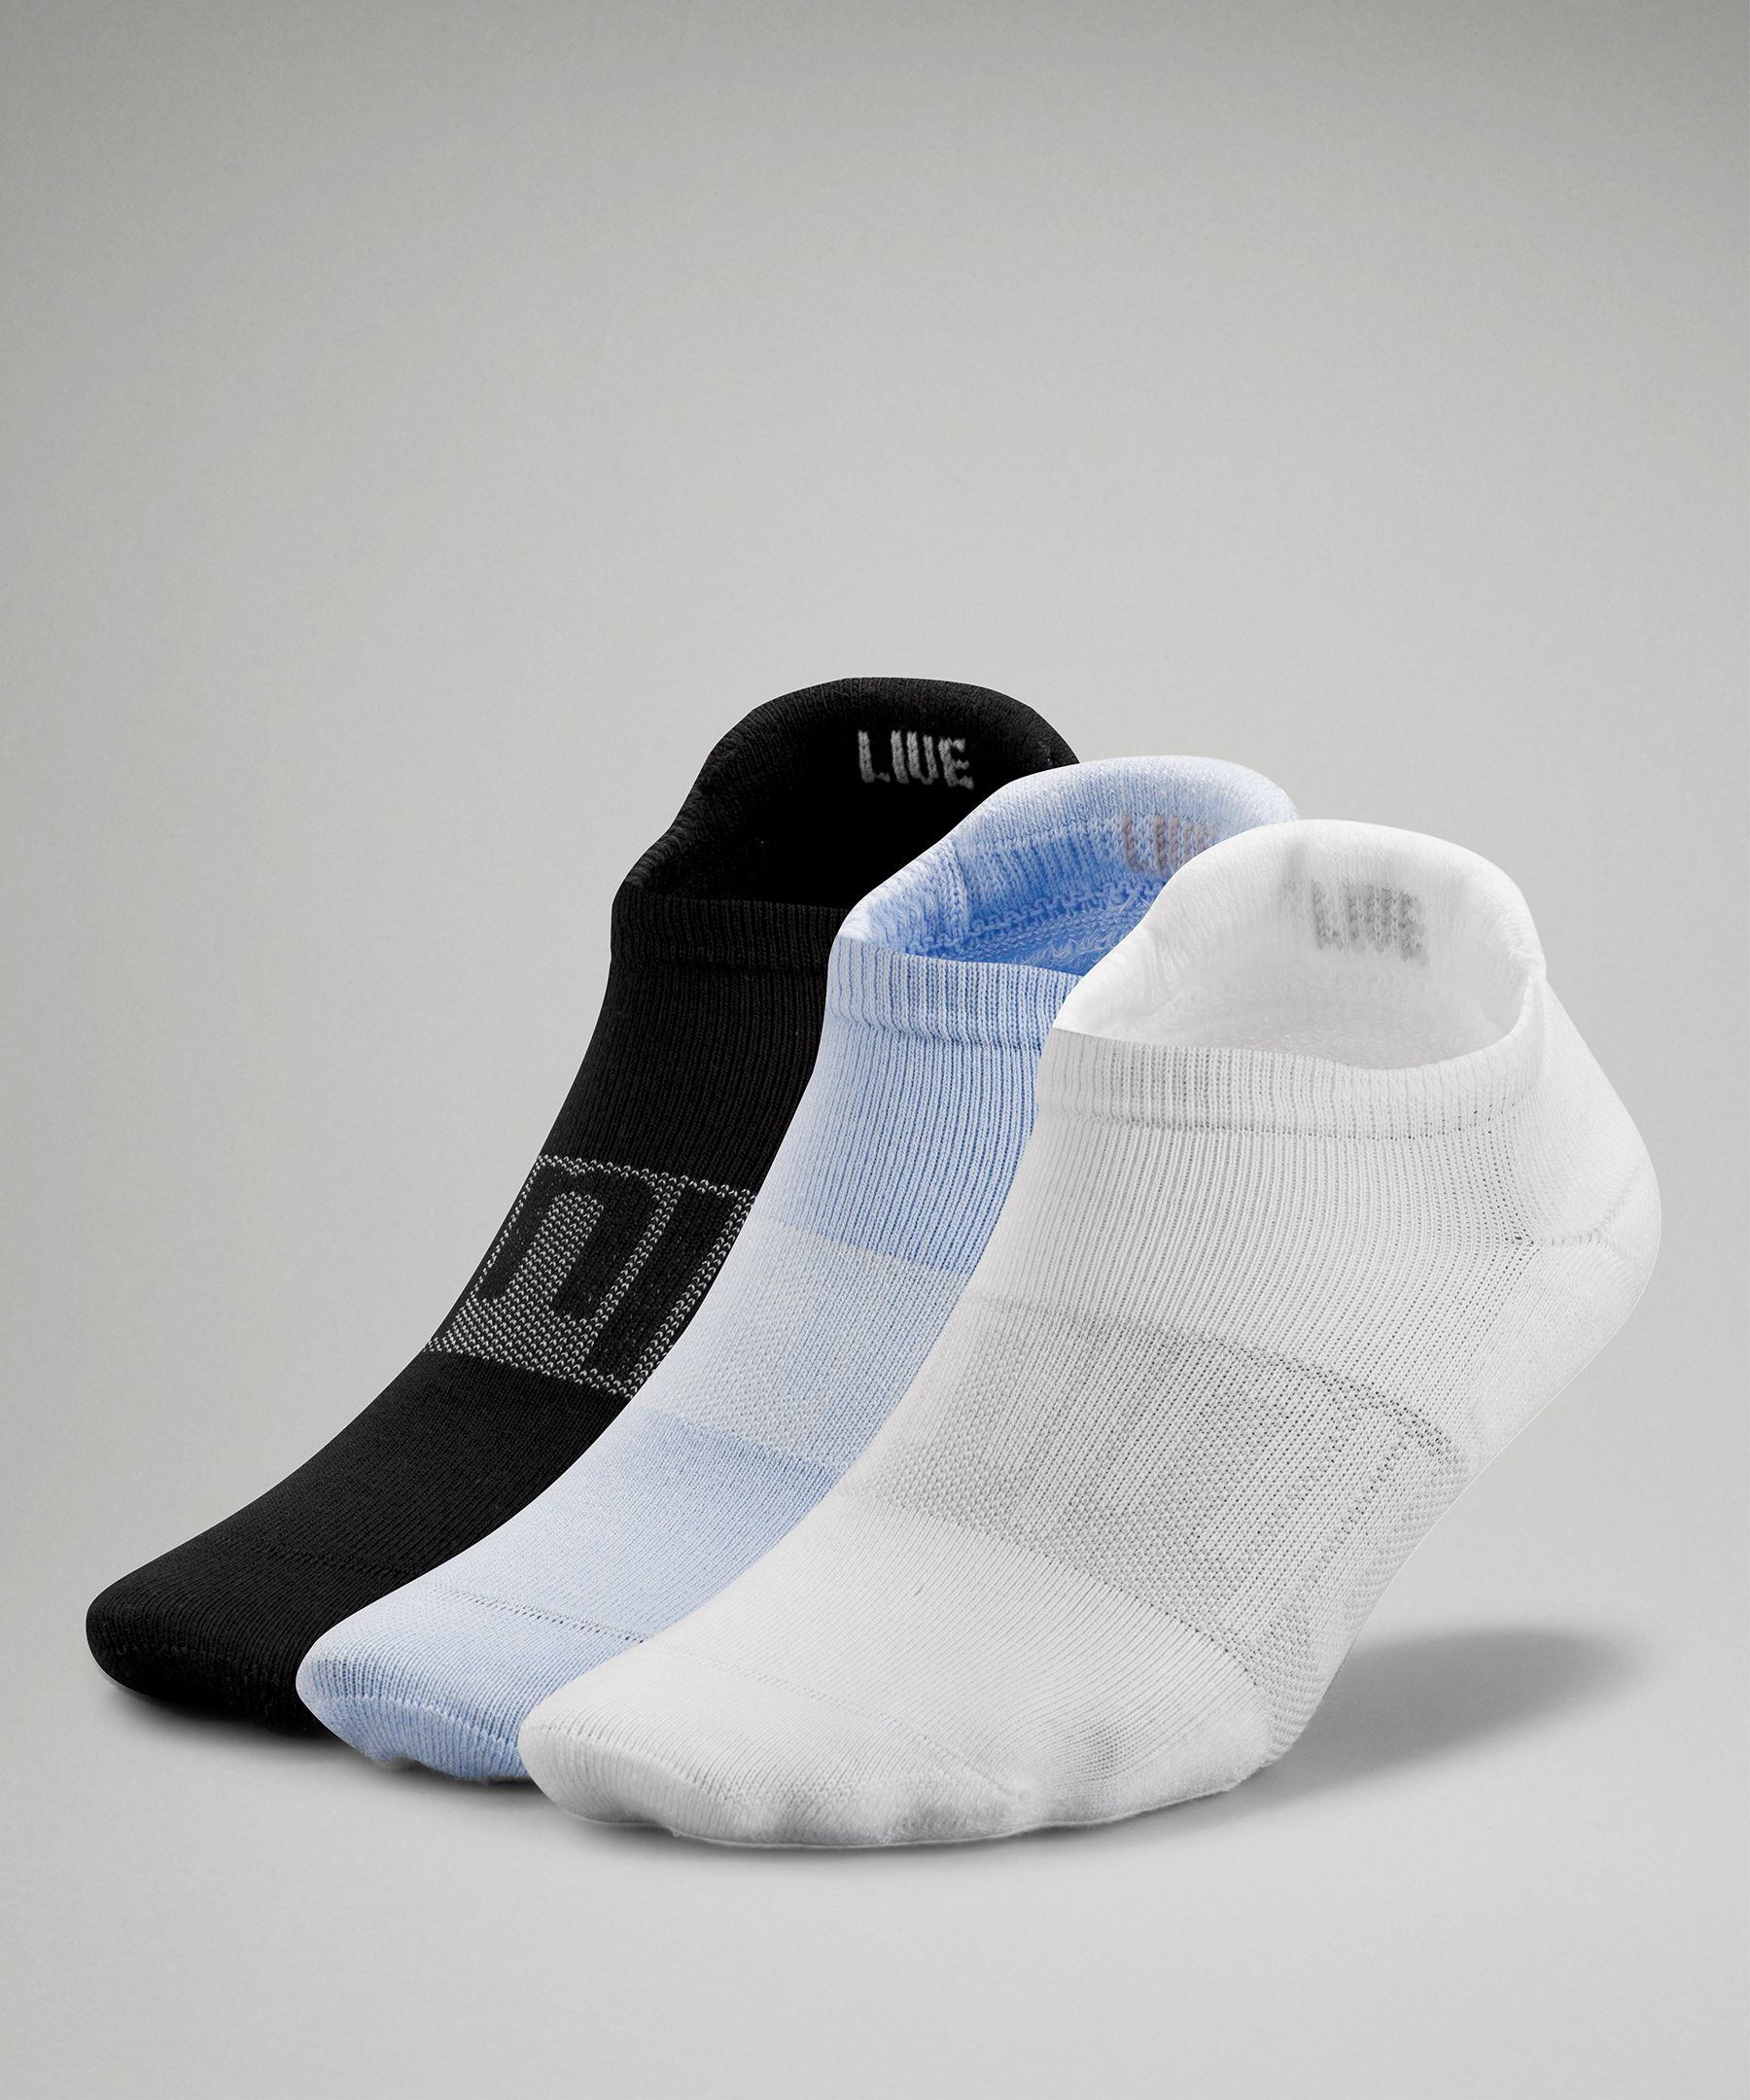 Lululemon Daily Stride Low Ankle Socks 3 Pack In White/blue Linen/black